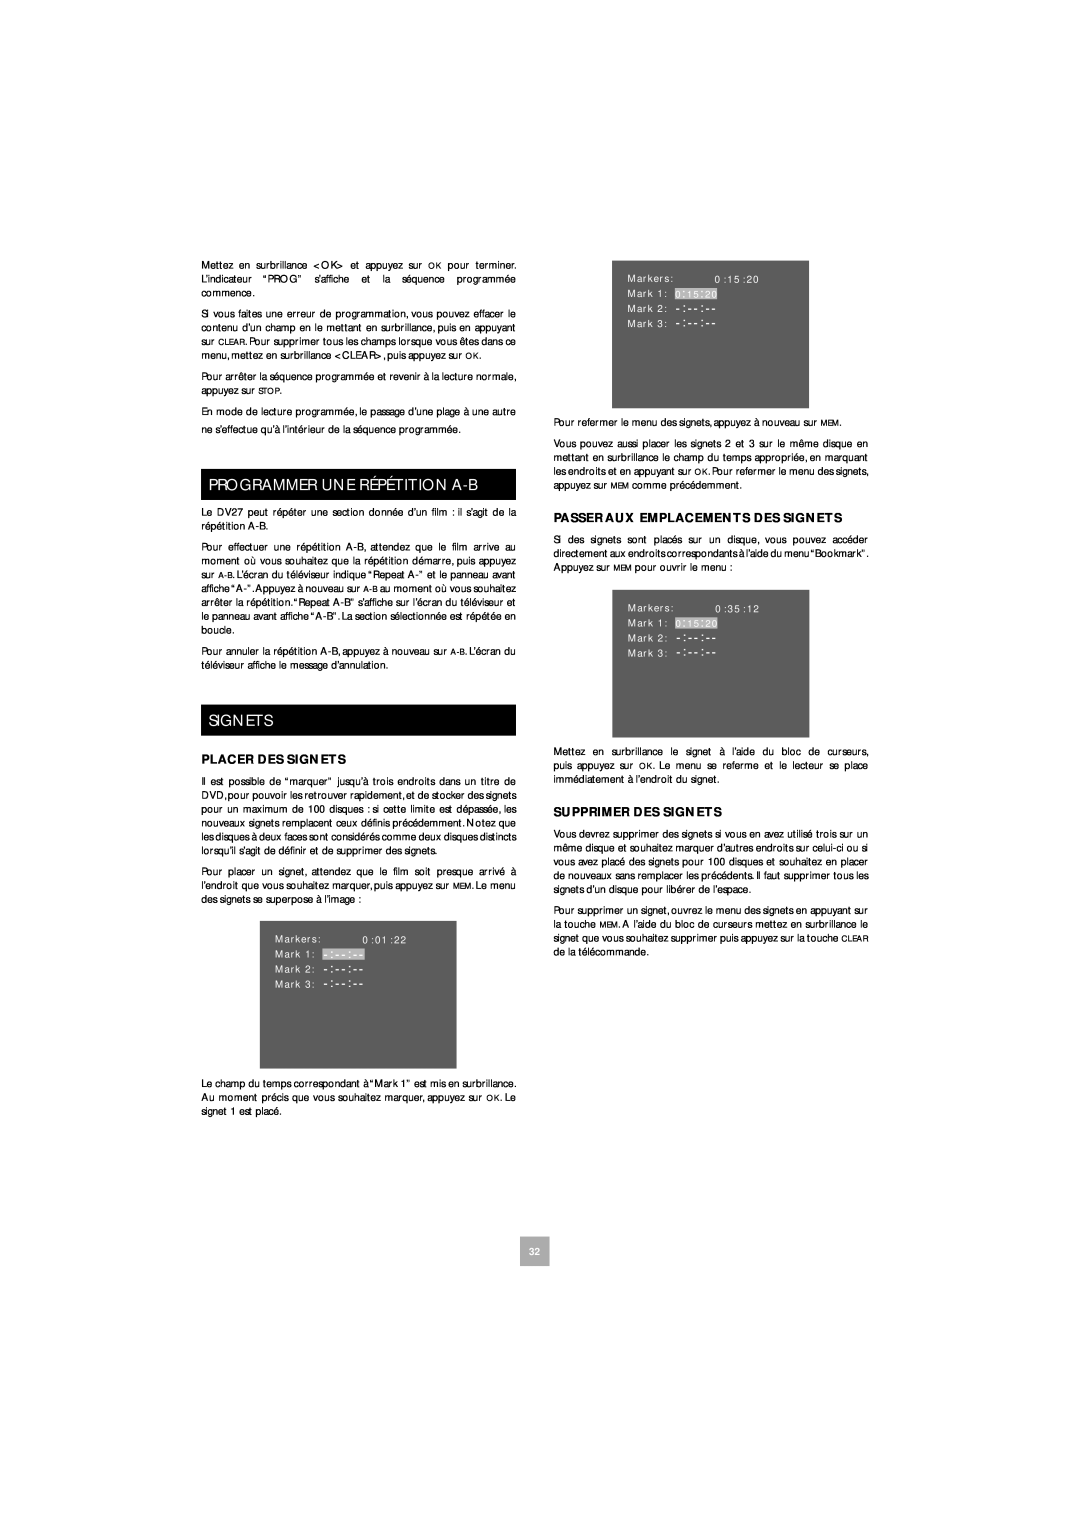 Arcam DV27 manual Programmer Une Répétition A-B, Placer Des Signets, Passer Aux Emplacements Des Signets 